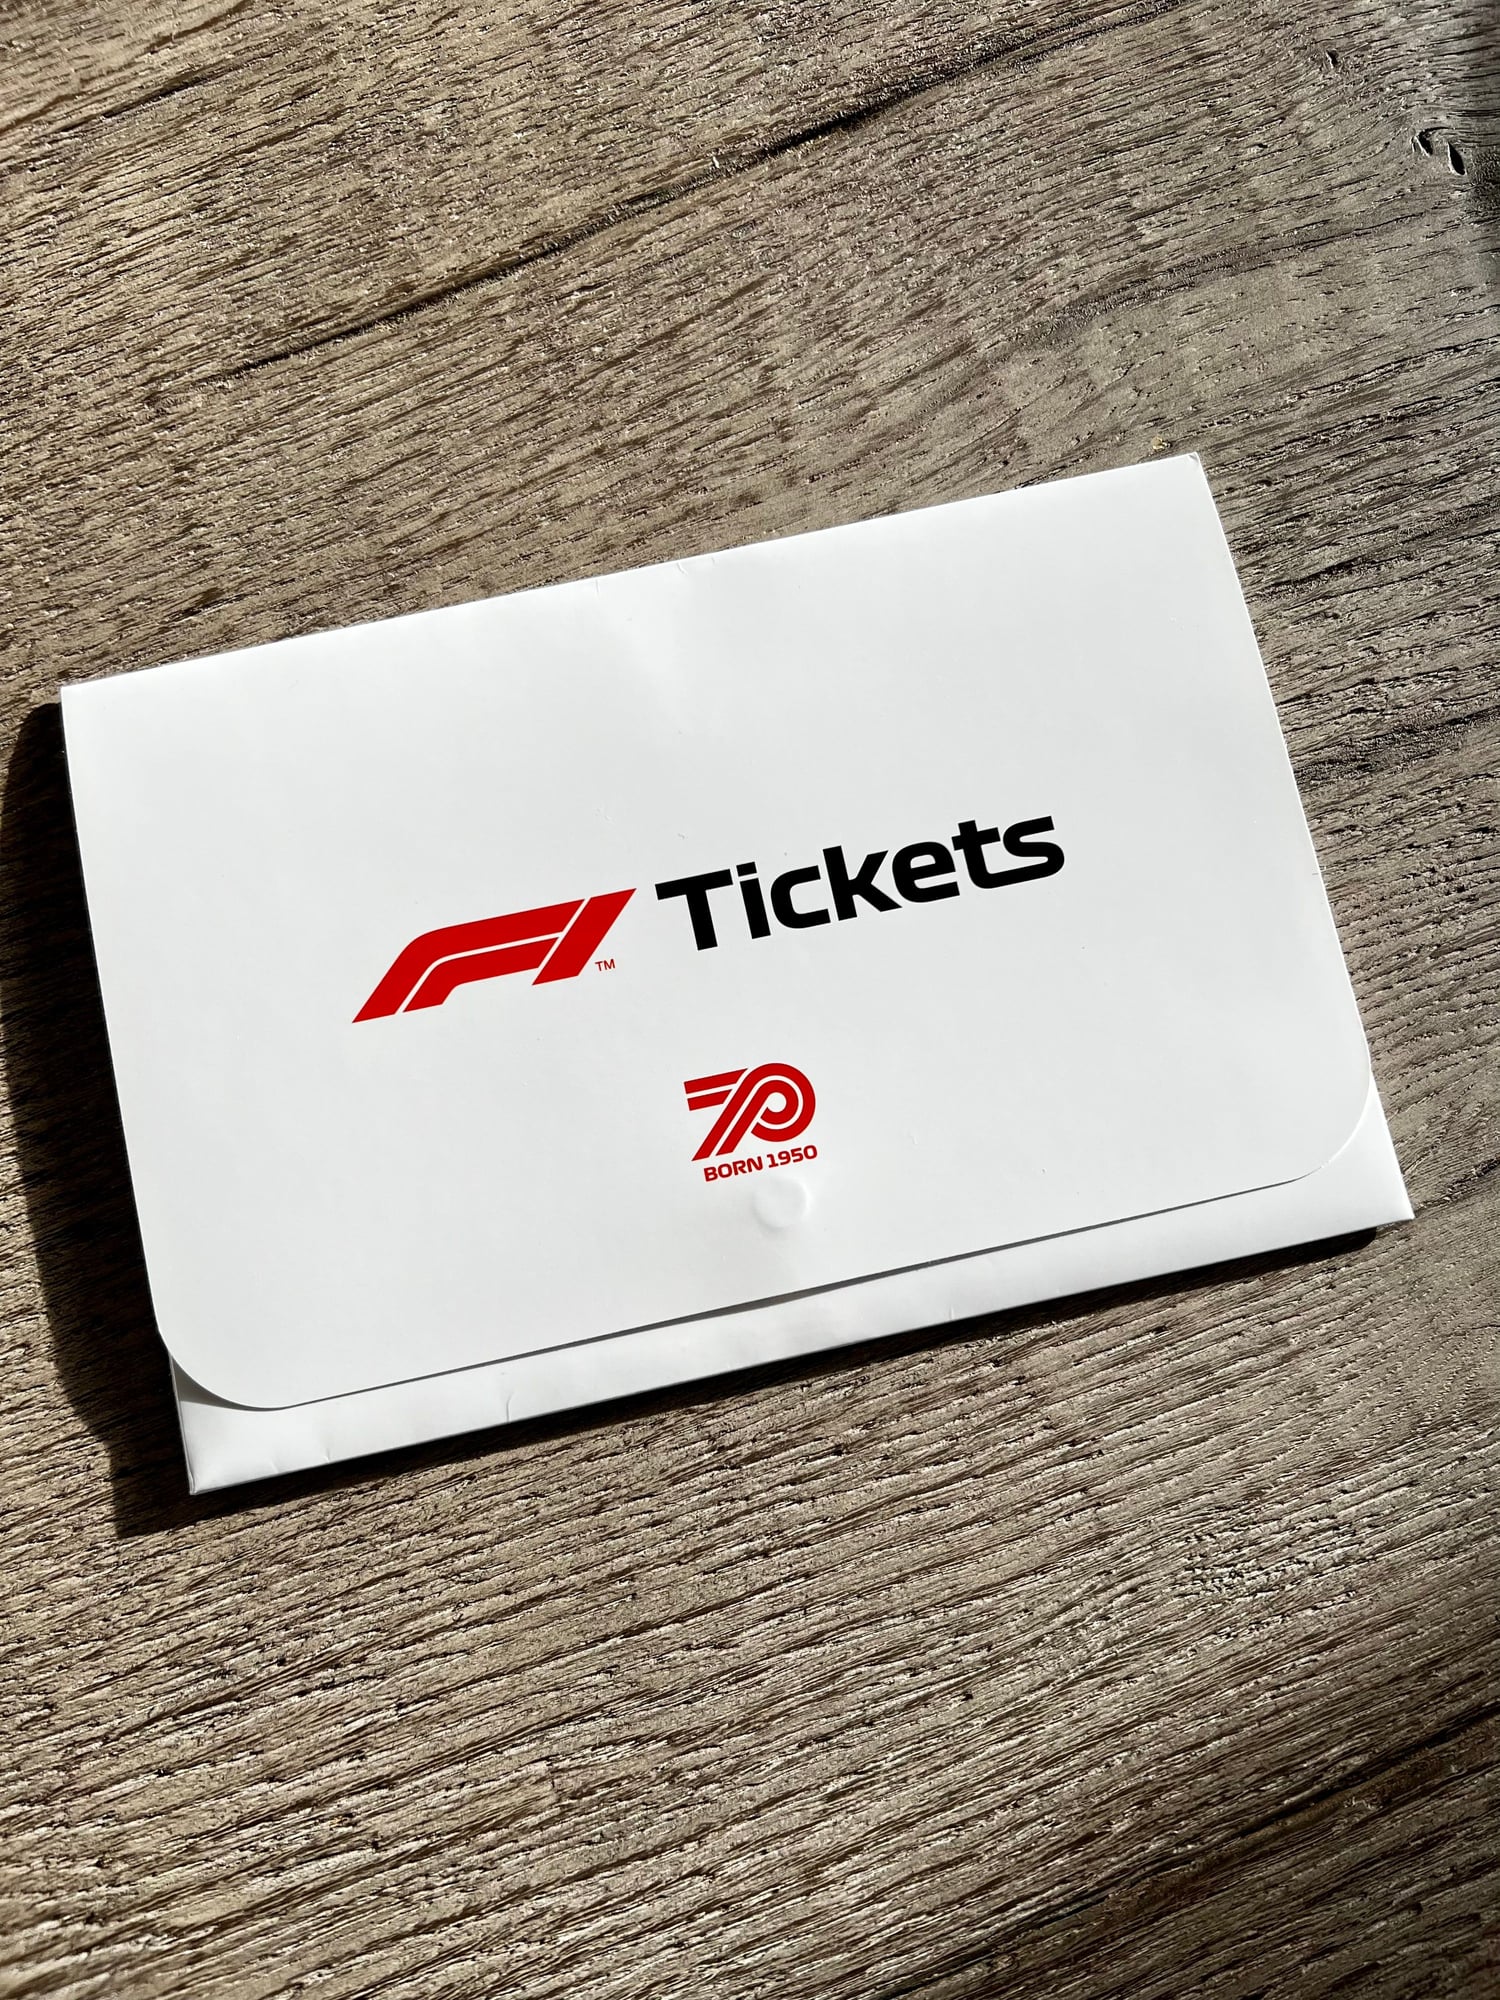 Austin F1 Tickets For Sale Rennlist Porsche Discussion Forums